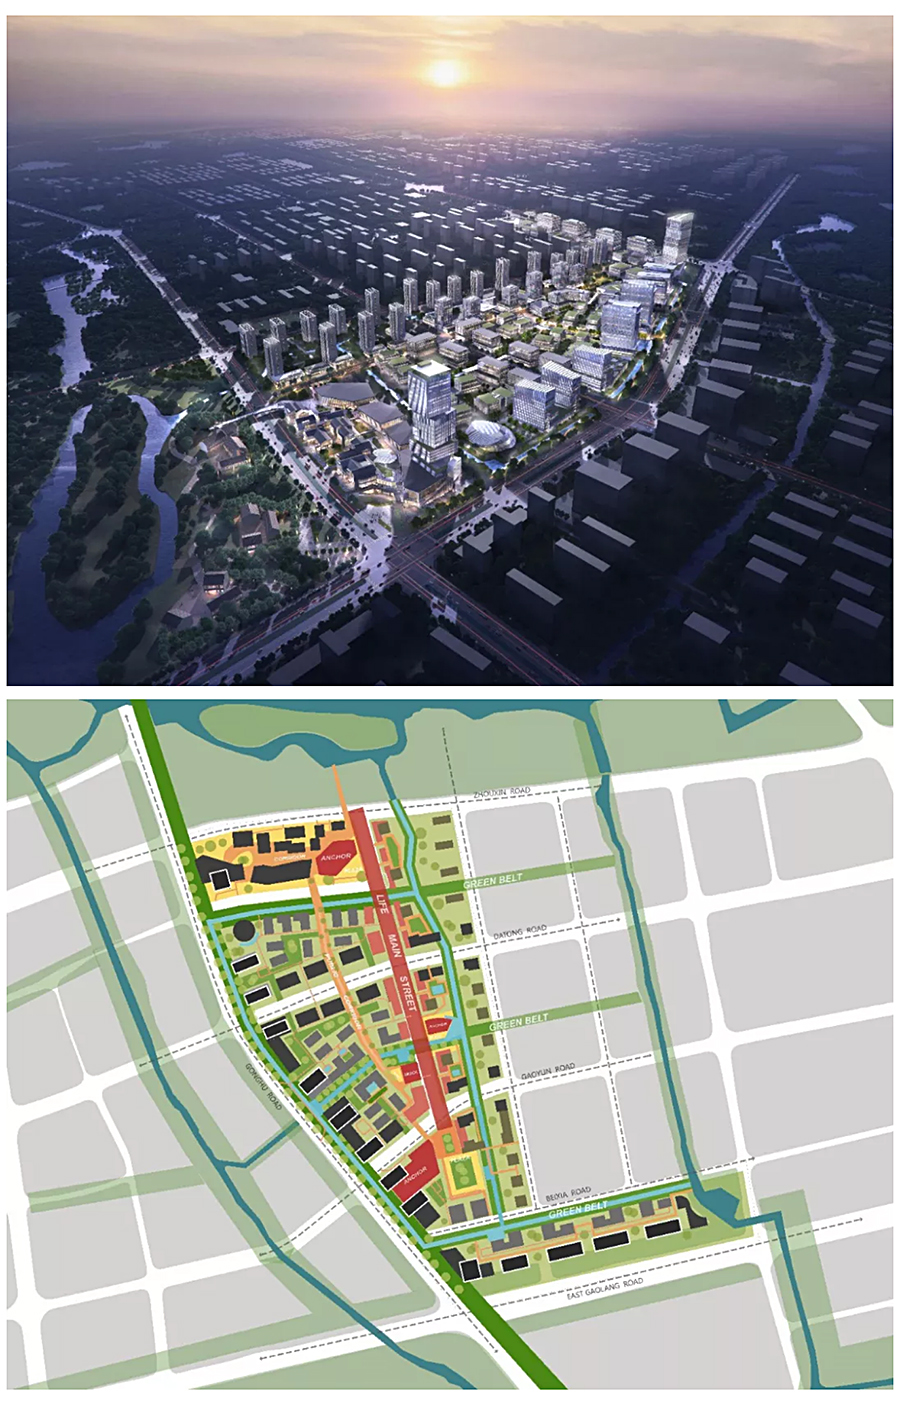 旗舰型-活力产业城区-_-无锡市经开区黄金湾产业园区更新提升规划及城市设计_0001_图层-2.jpg